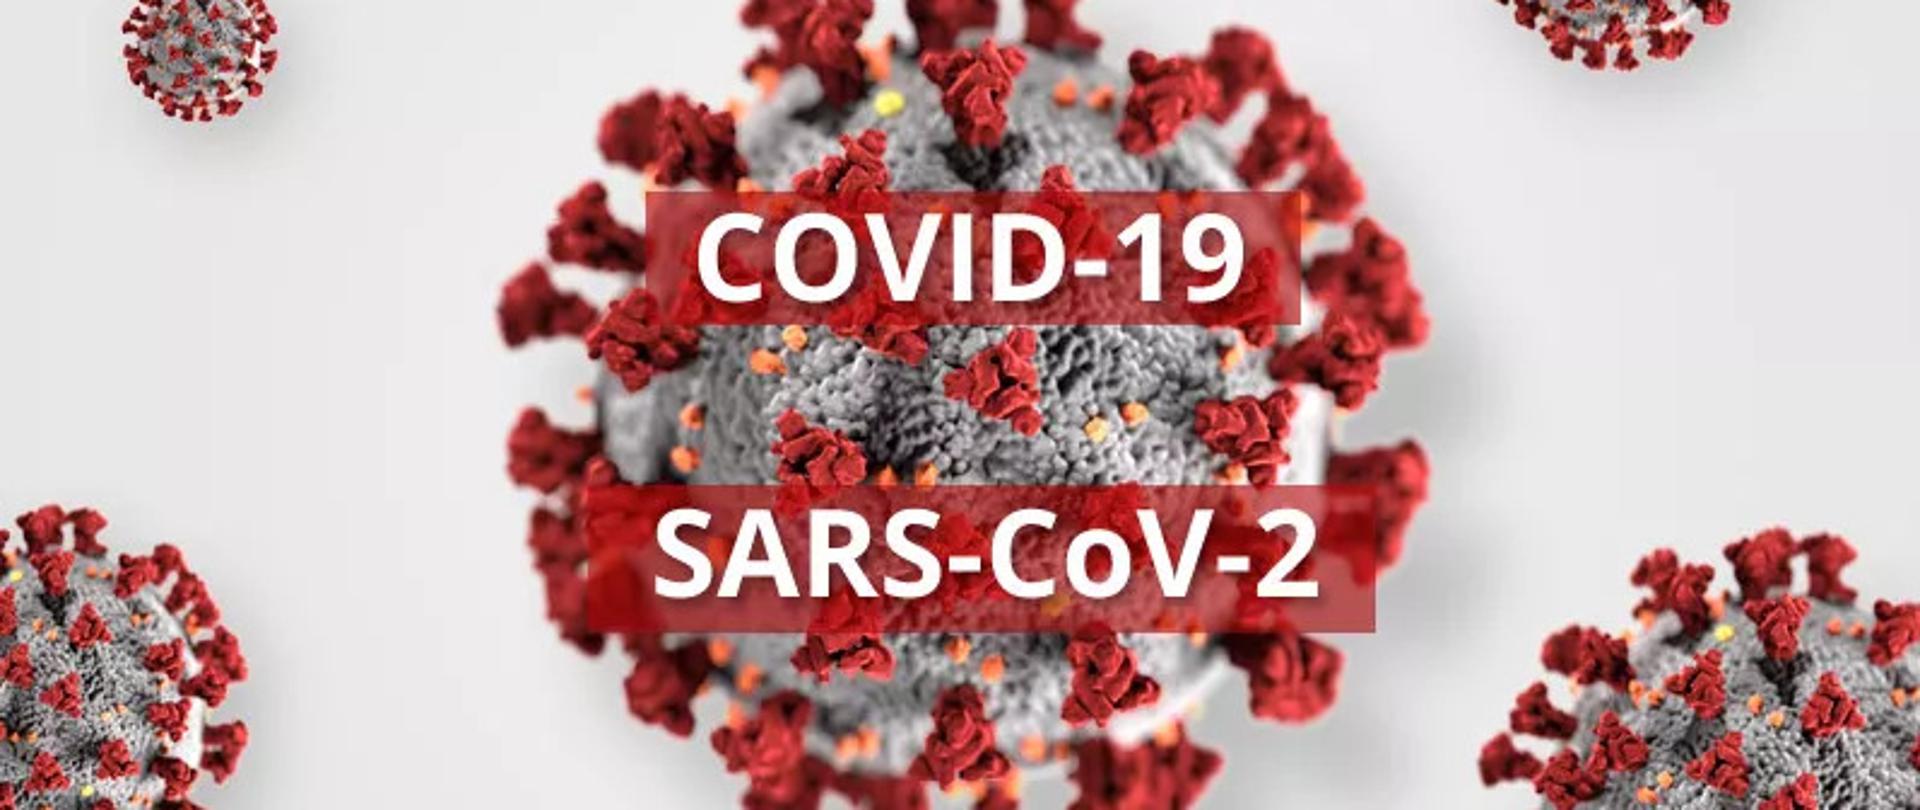 COVID-19 SARS-CoV-2